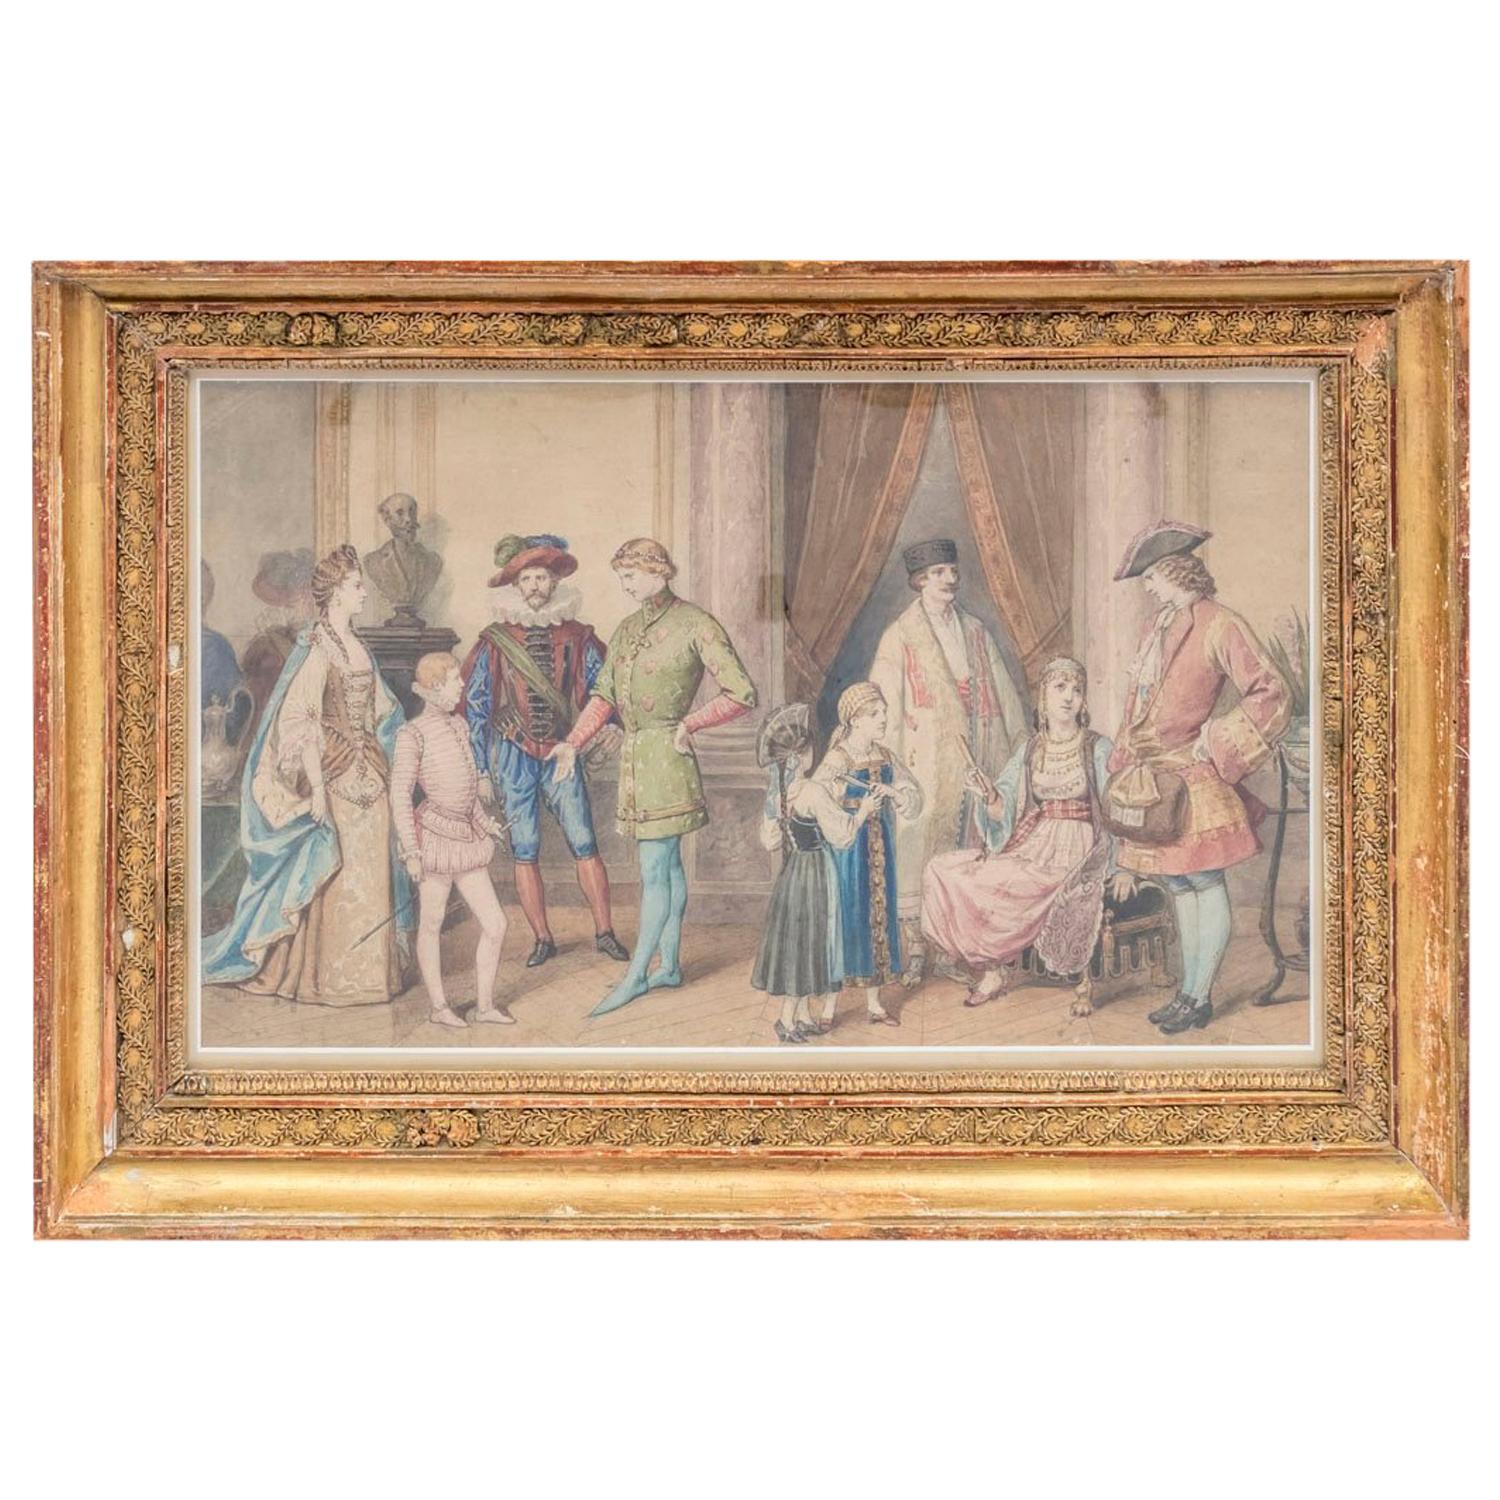 Framed watercolour, “Costume ball scene”, circa 1850